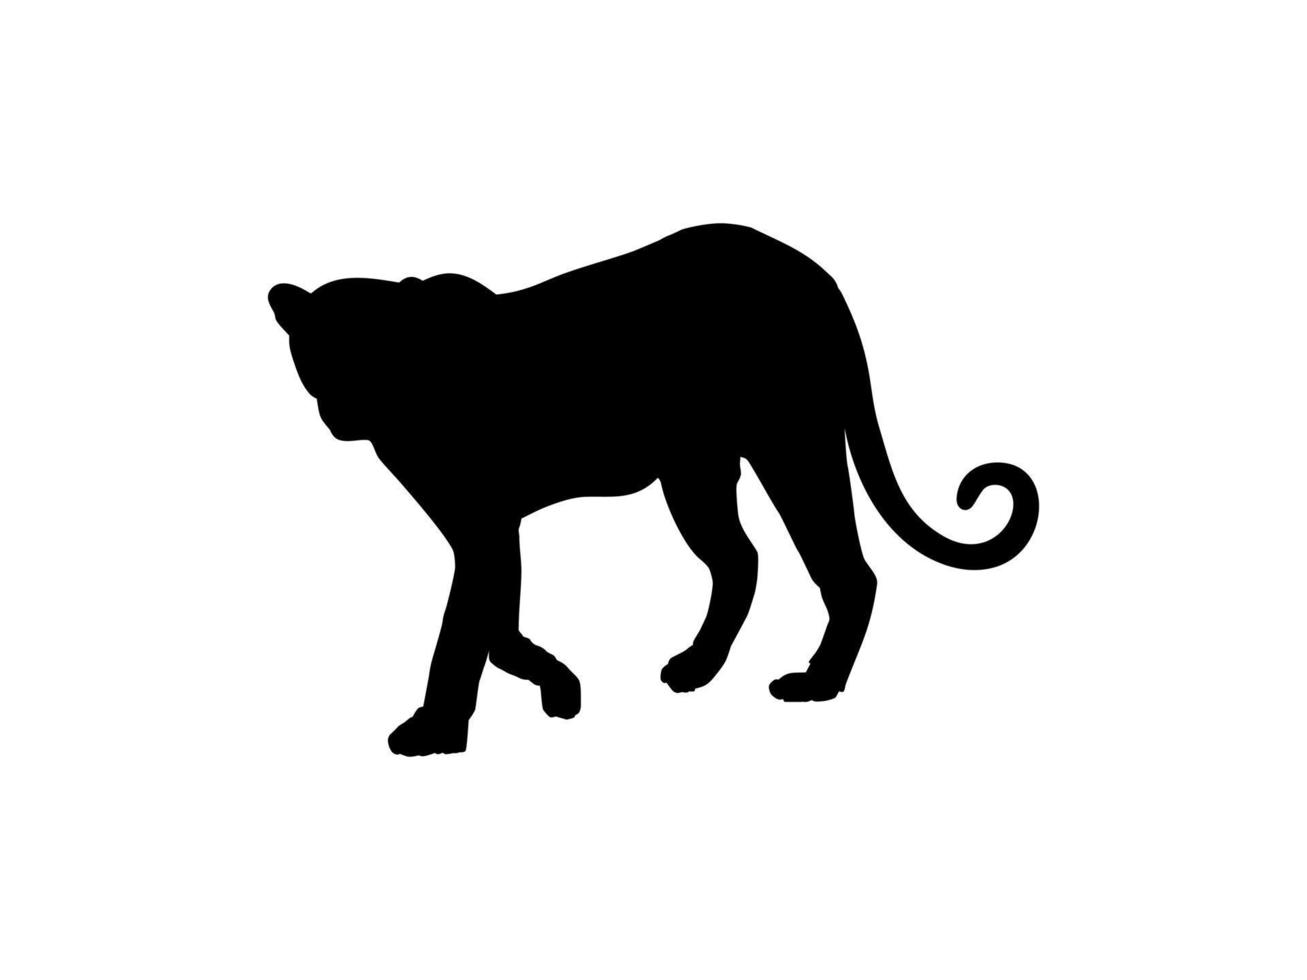 caminhando em pé tigre, leopardo, chita, pantera negra, onça, silhueta de família de gato grande para logotipo ou elemento de design gráfico. ilustração vetorial vetor